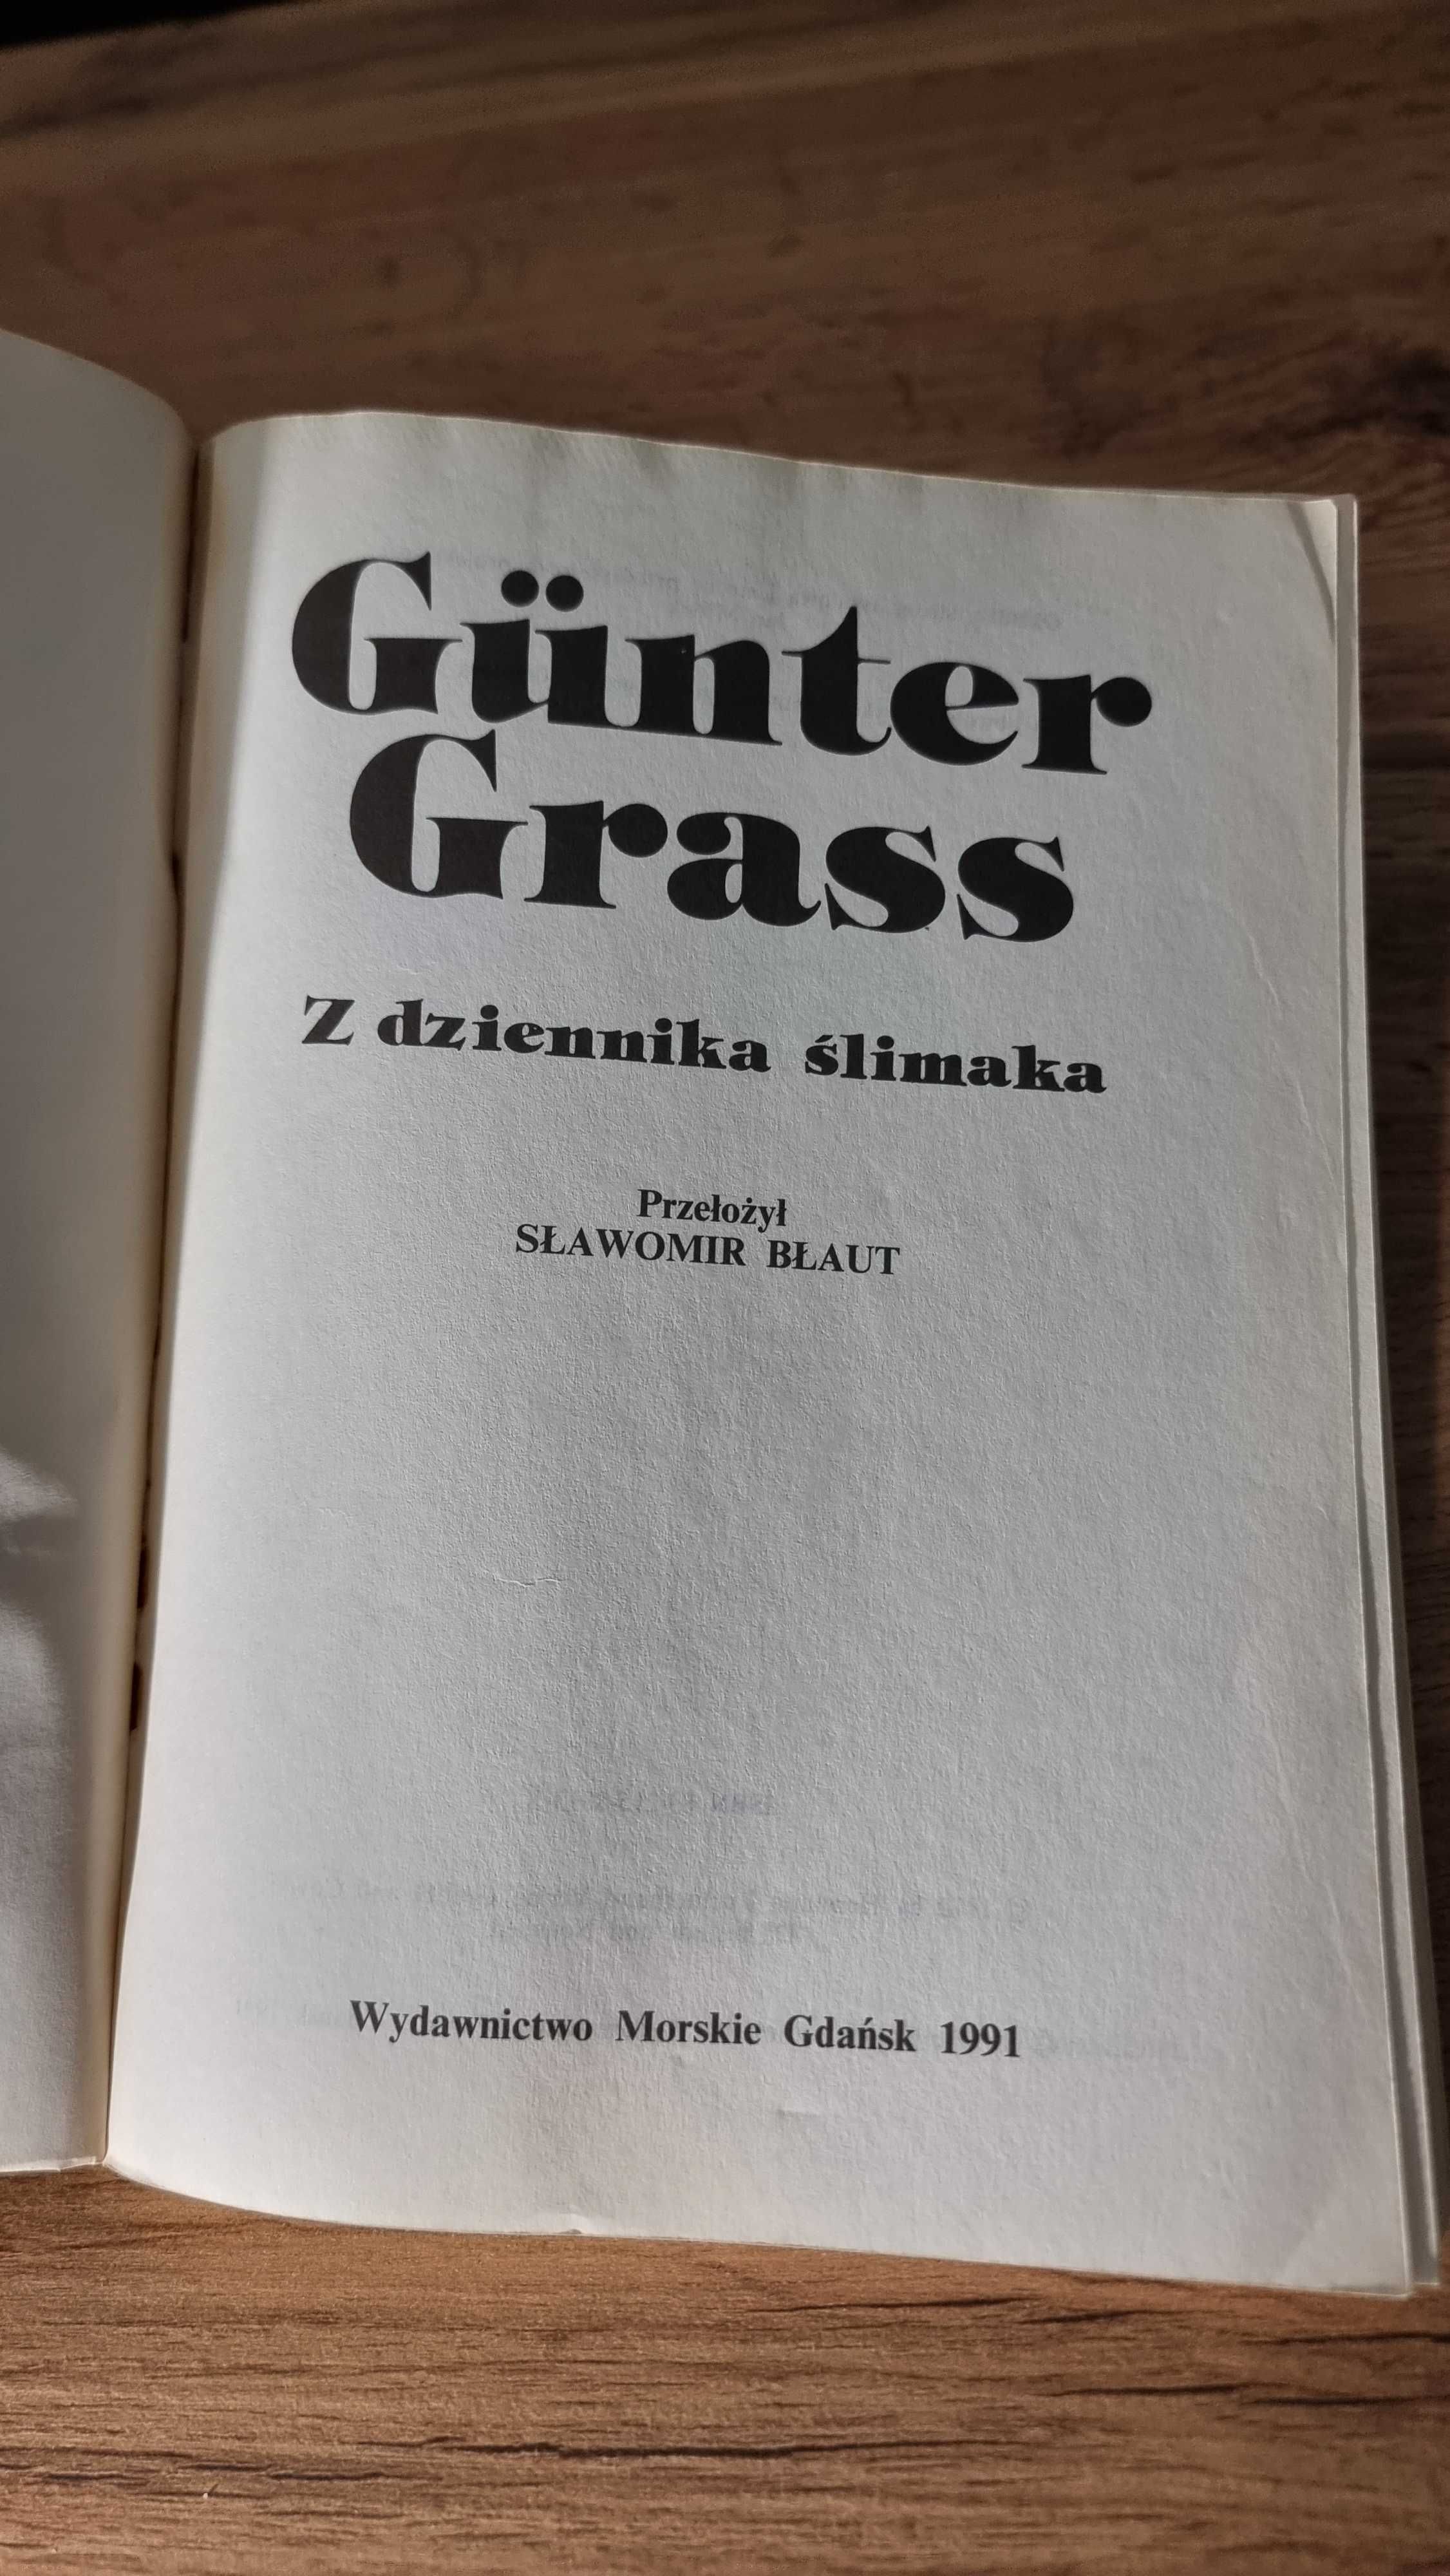 "Z dziennika ślimaka" - Gunter Grass, Wydanie I